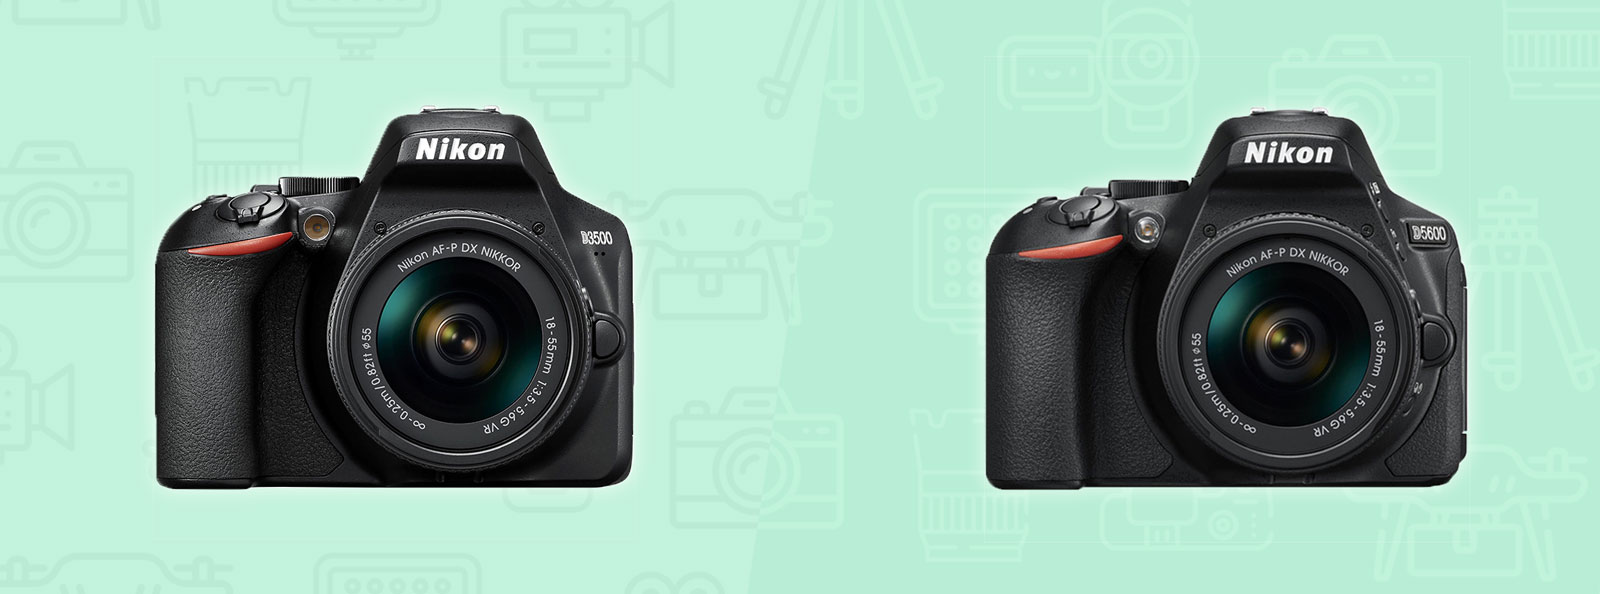 Nikon D3500 vs D5600